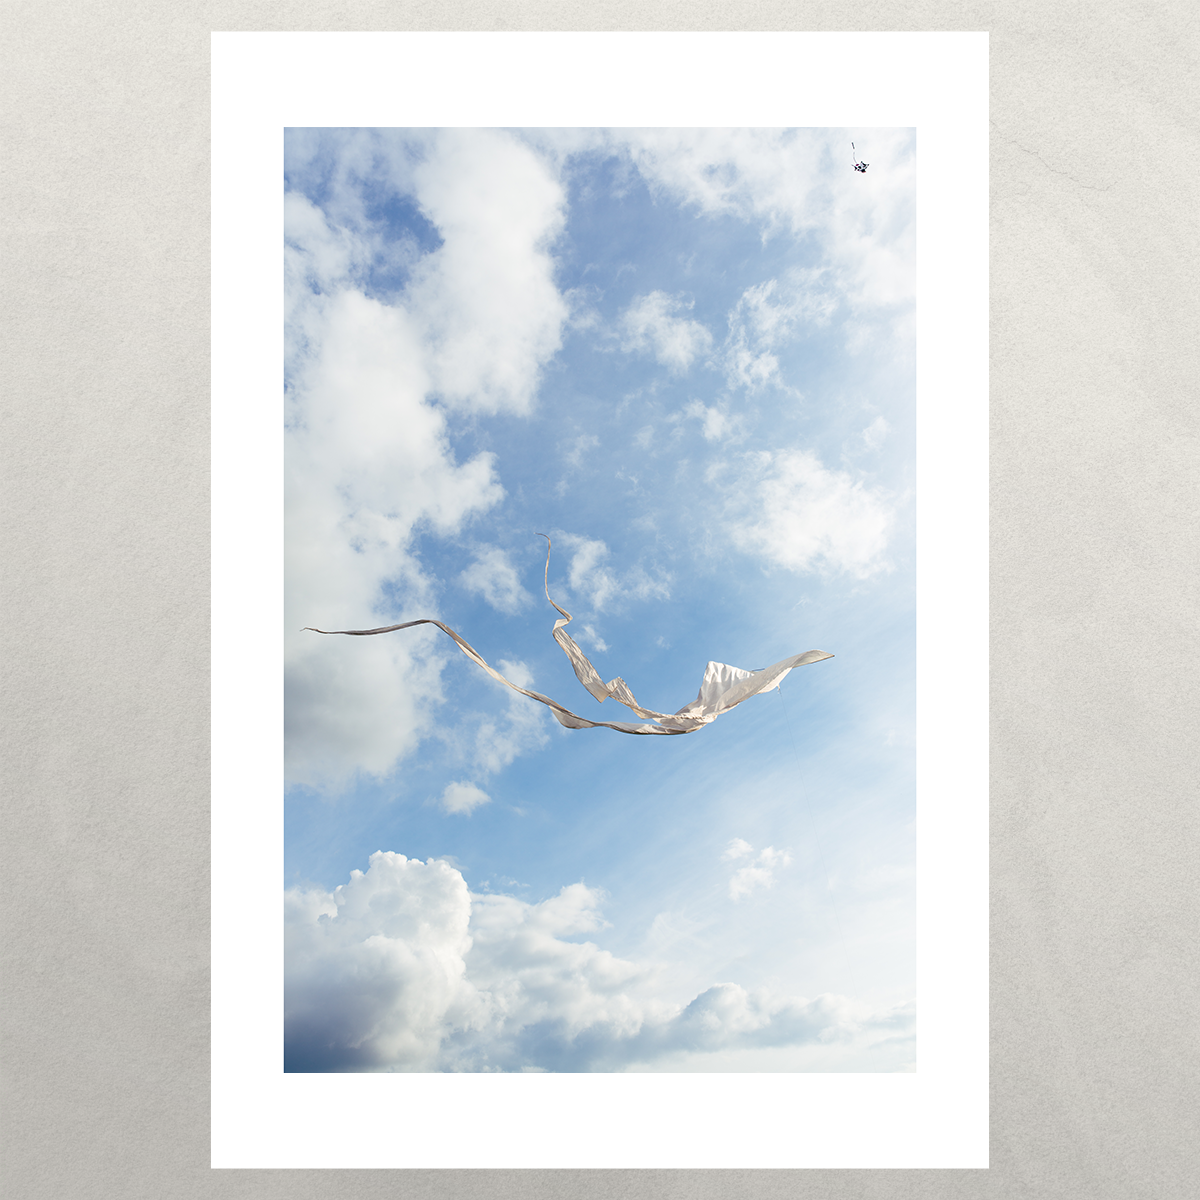 White Kite Flying Against the Blue